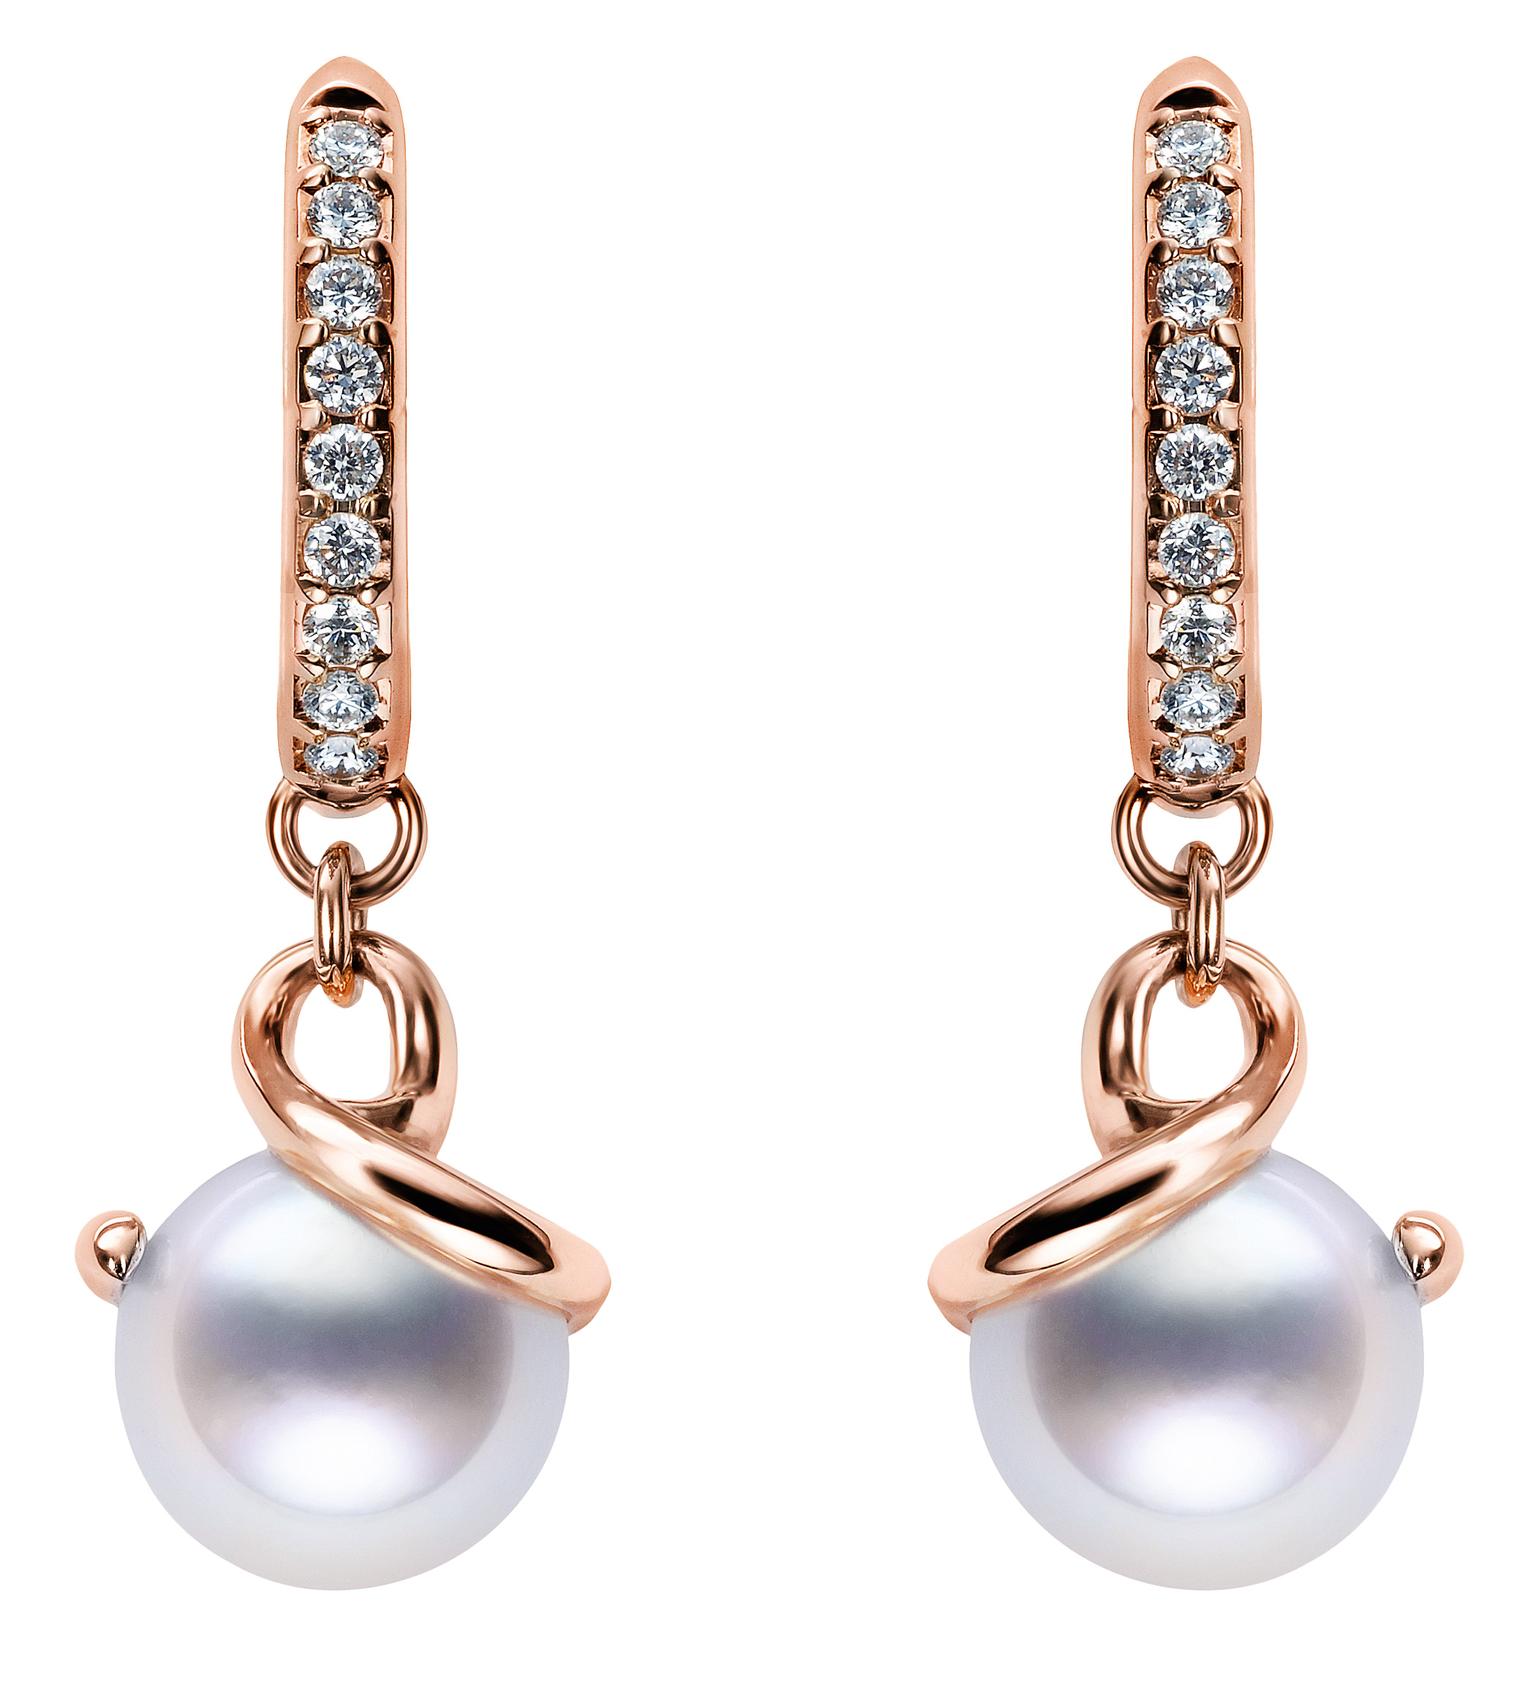 Twist South Sea pearl earrings 